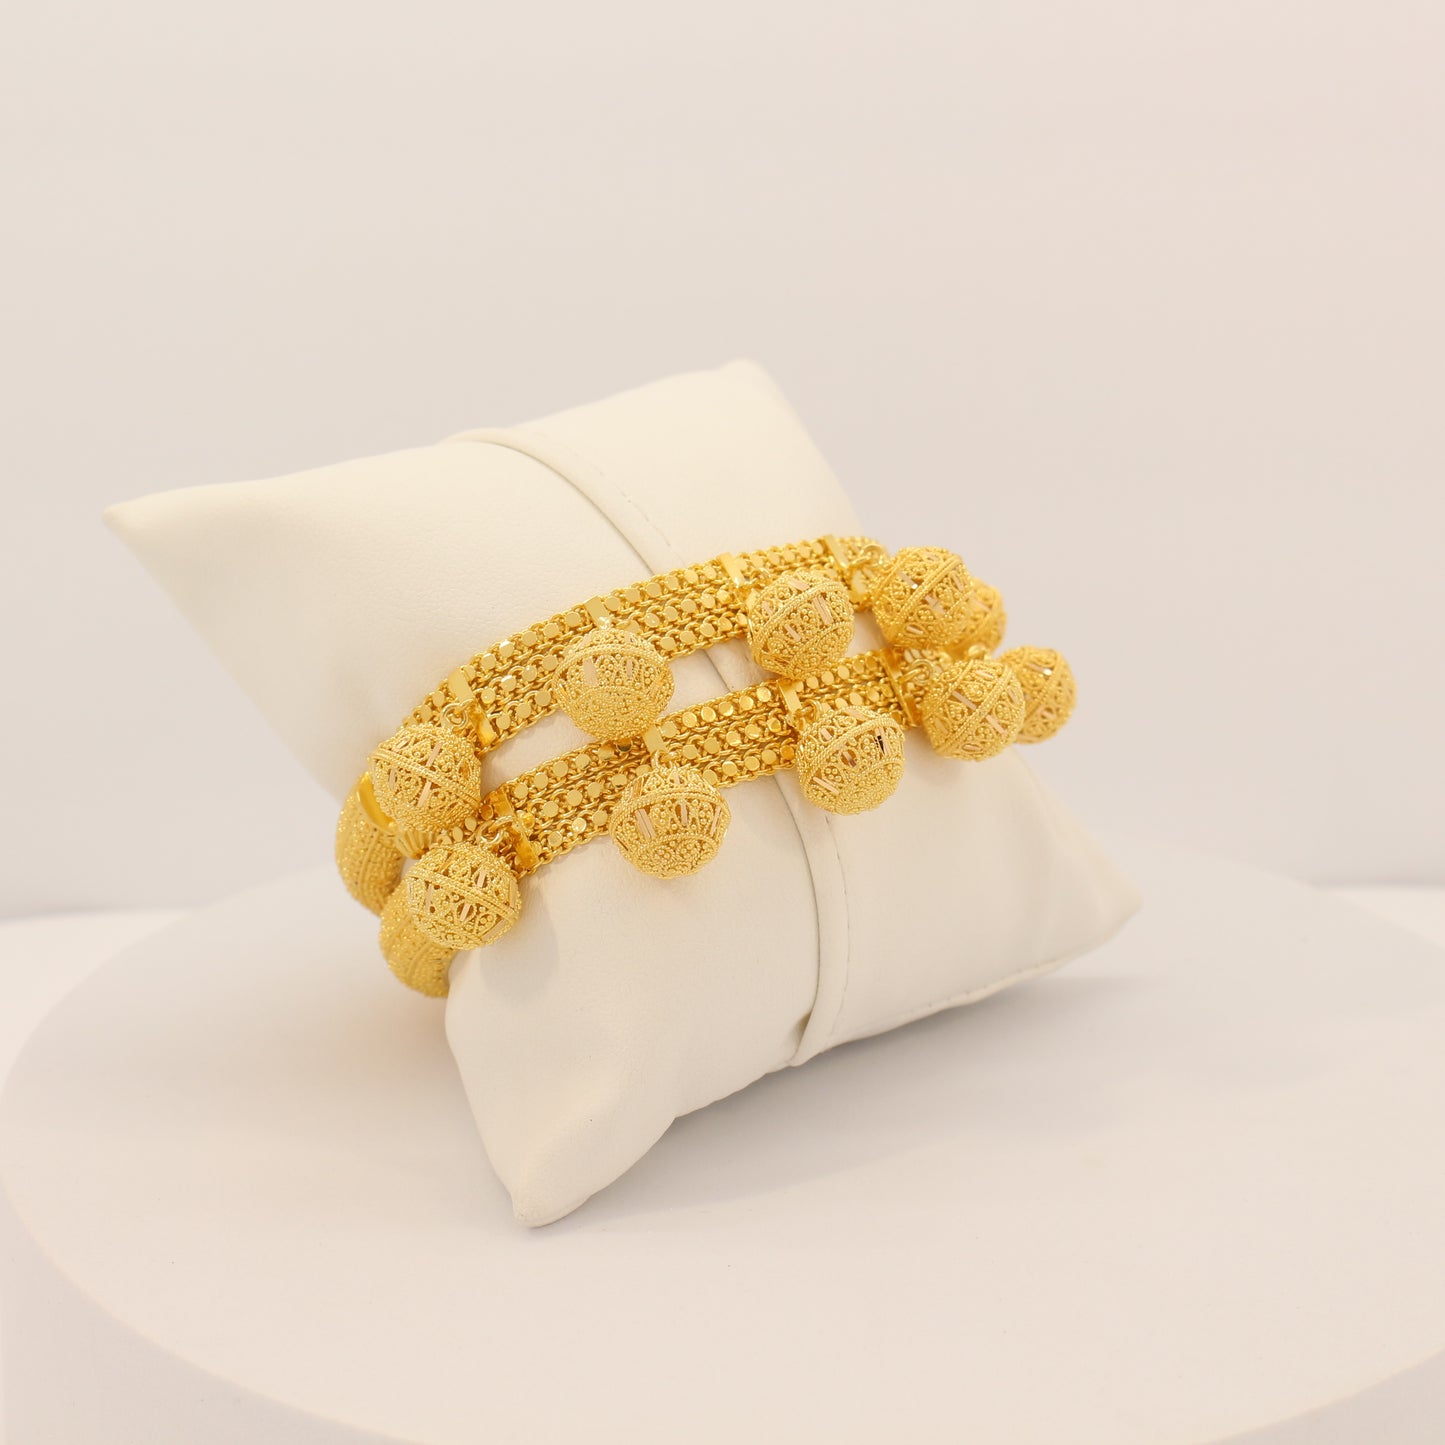 21K Gold Indian Style Cuff Bracelets